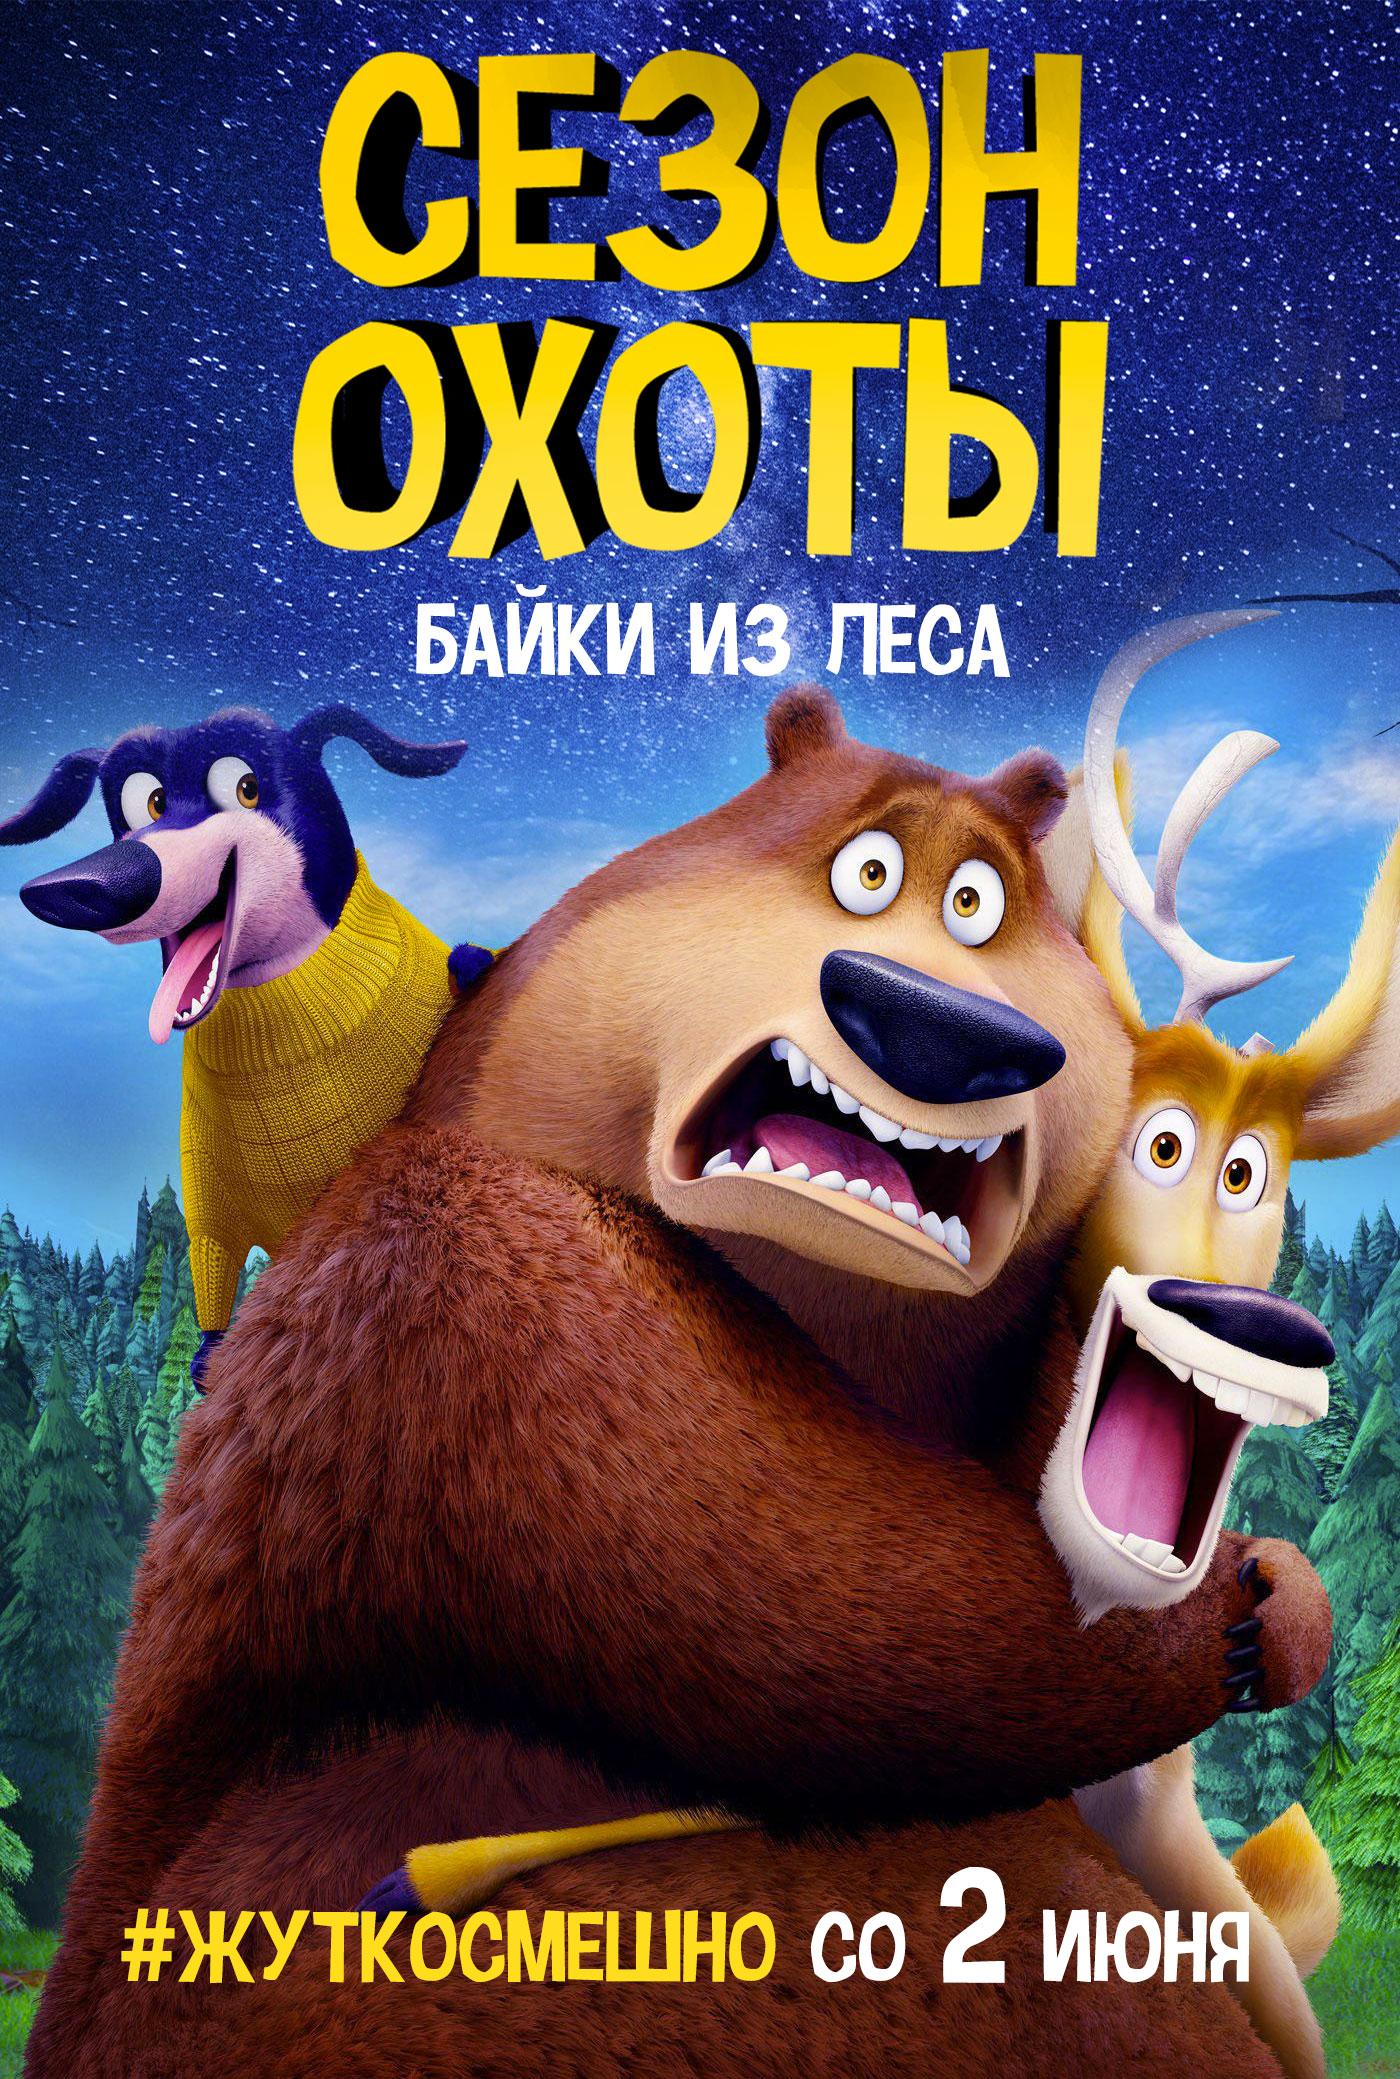 Постер - Сезон охоты: Байки из леса: 1400x2079 / 606.14 Кб